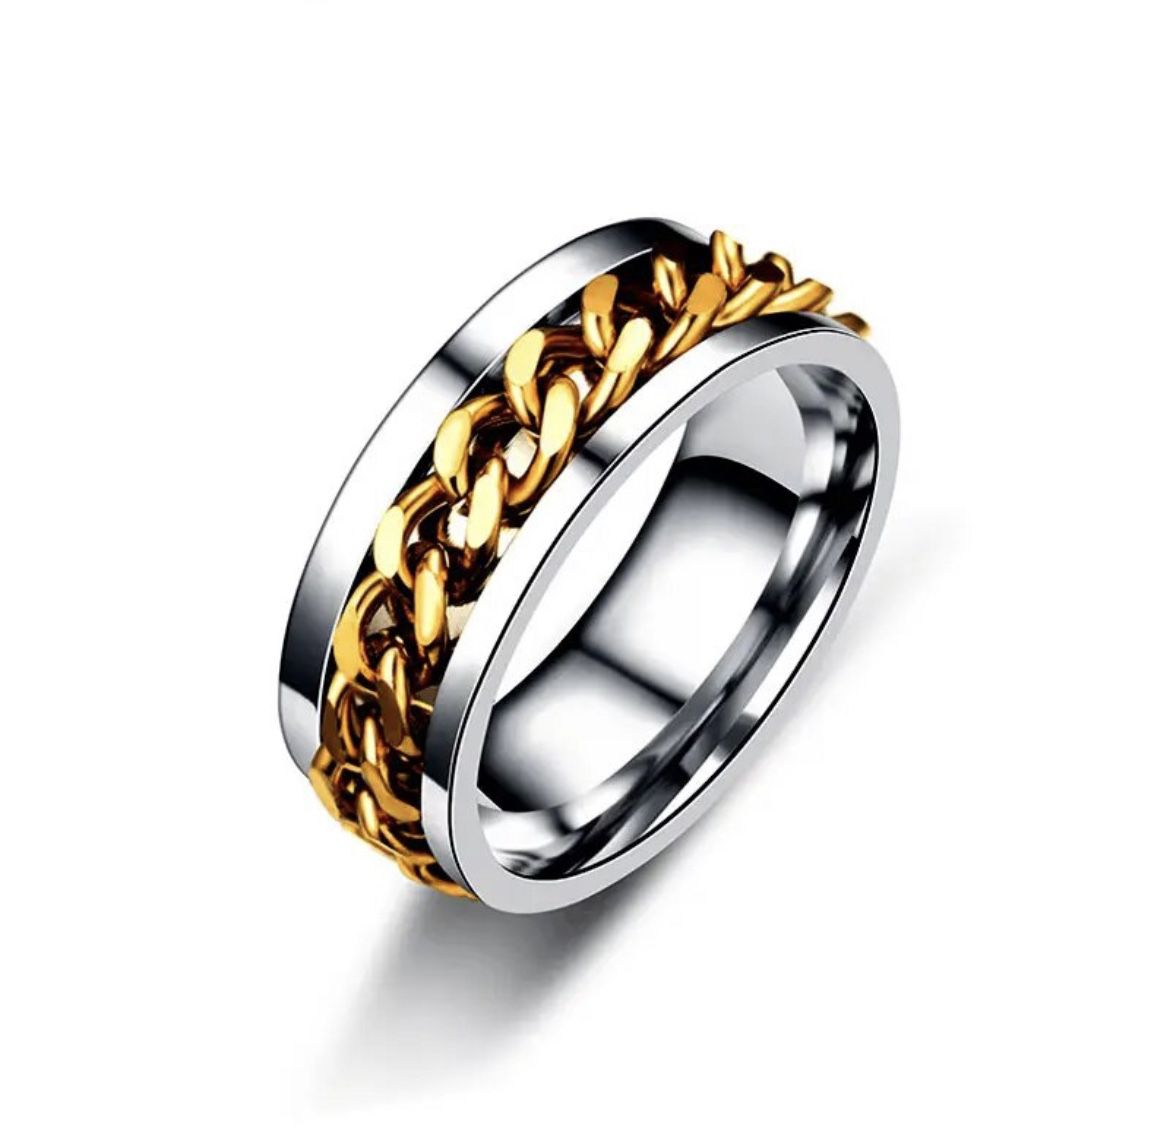 Spinner Ring For Men And Women 